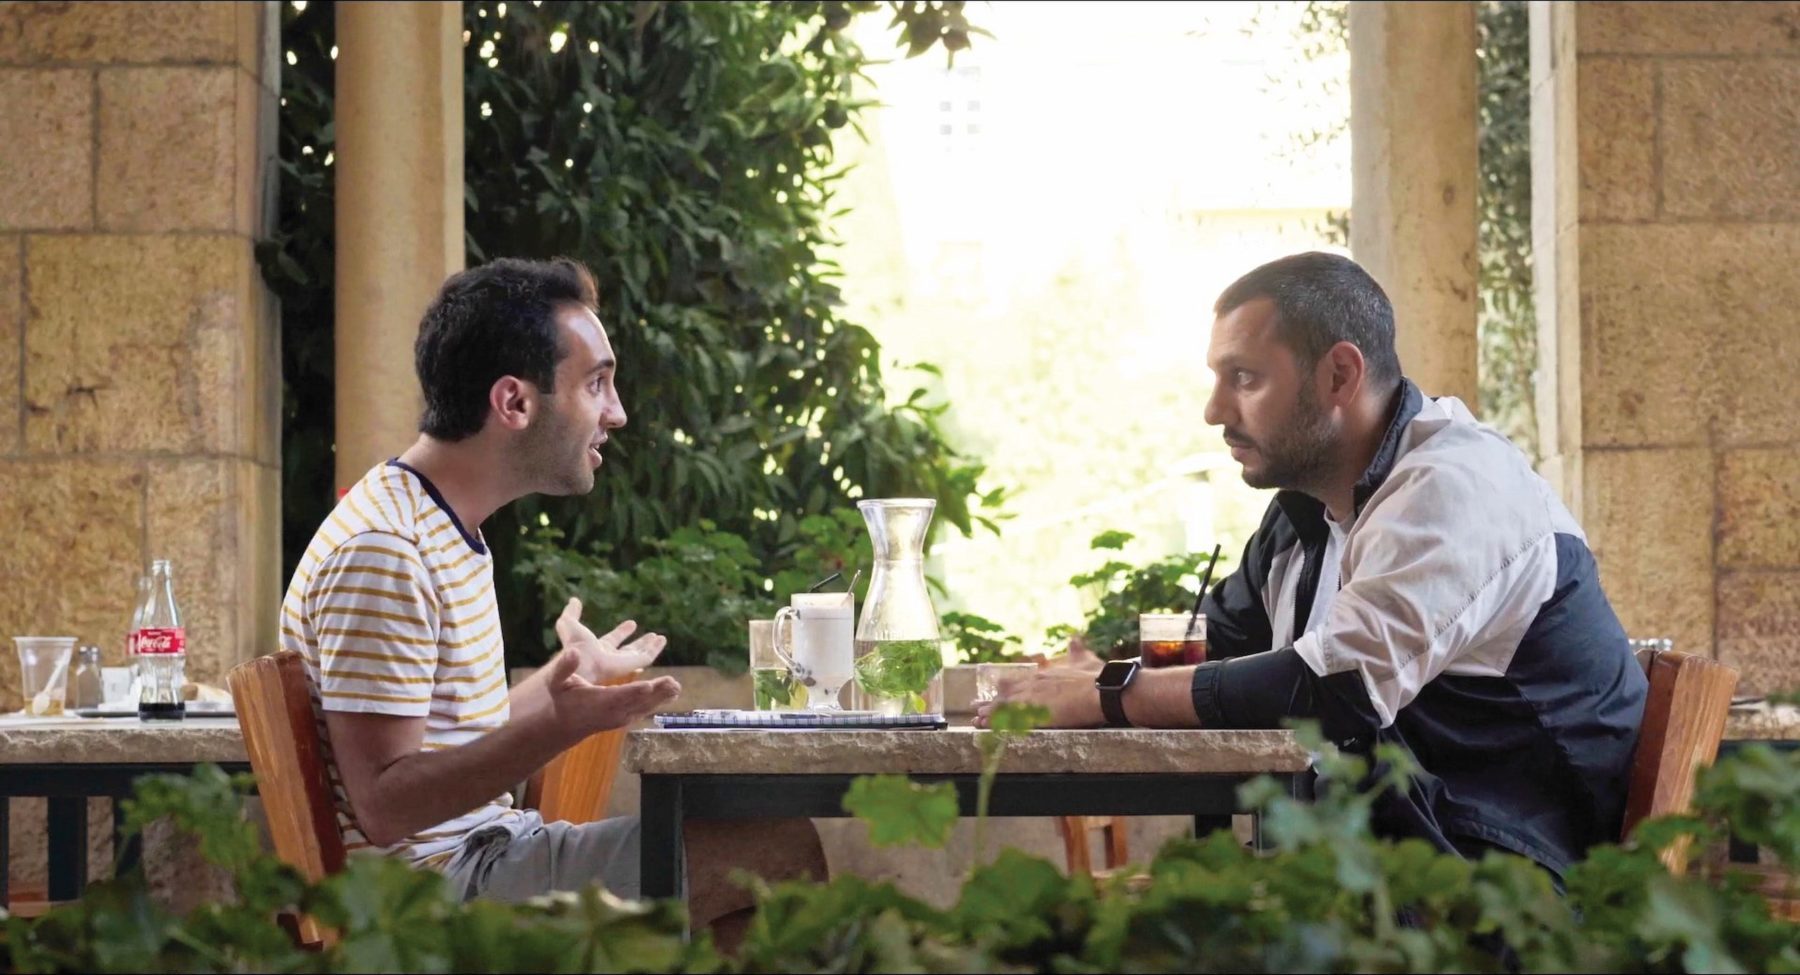 Zwei männliche Personen, sommerlich bekleidet, sitzen sich draußen in einem Restaurant mit jeweils einer Limonade gegenüber und unterhalten sich.